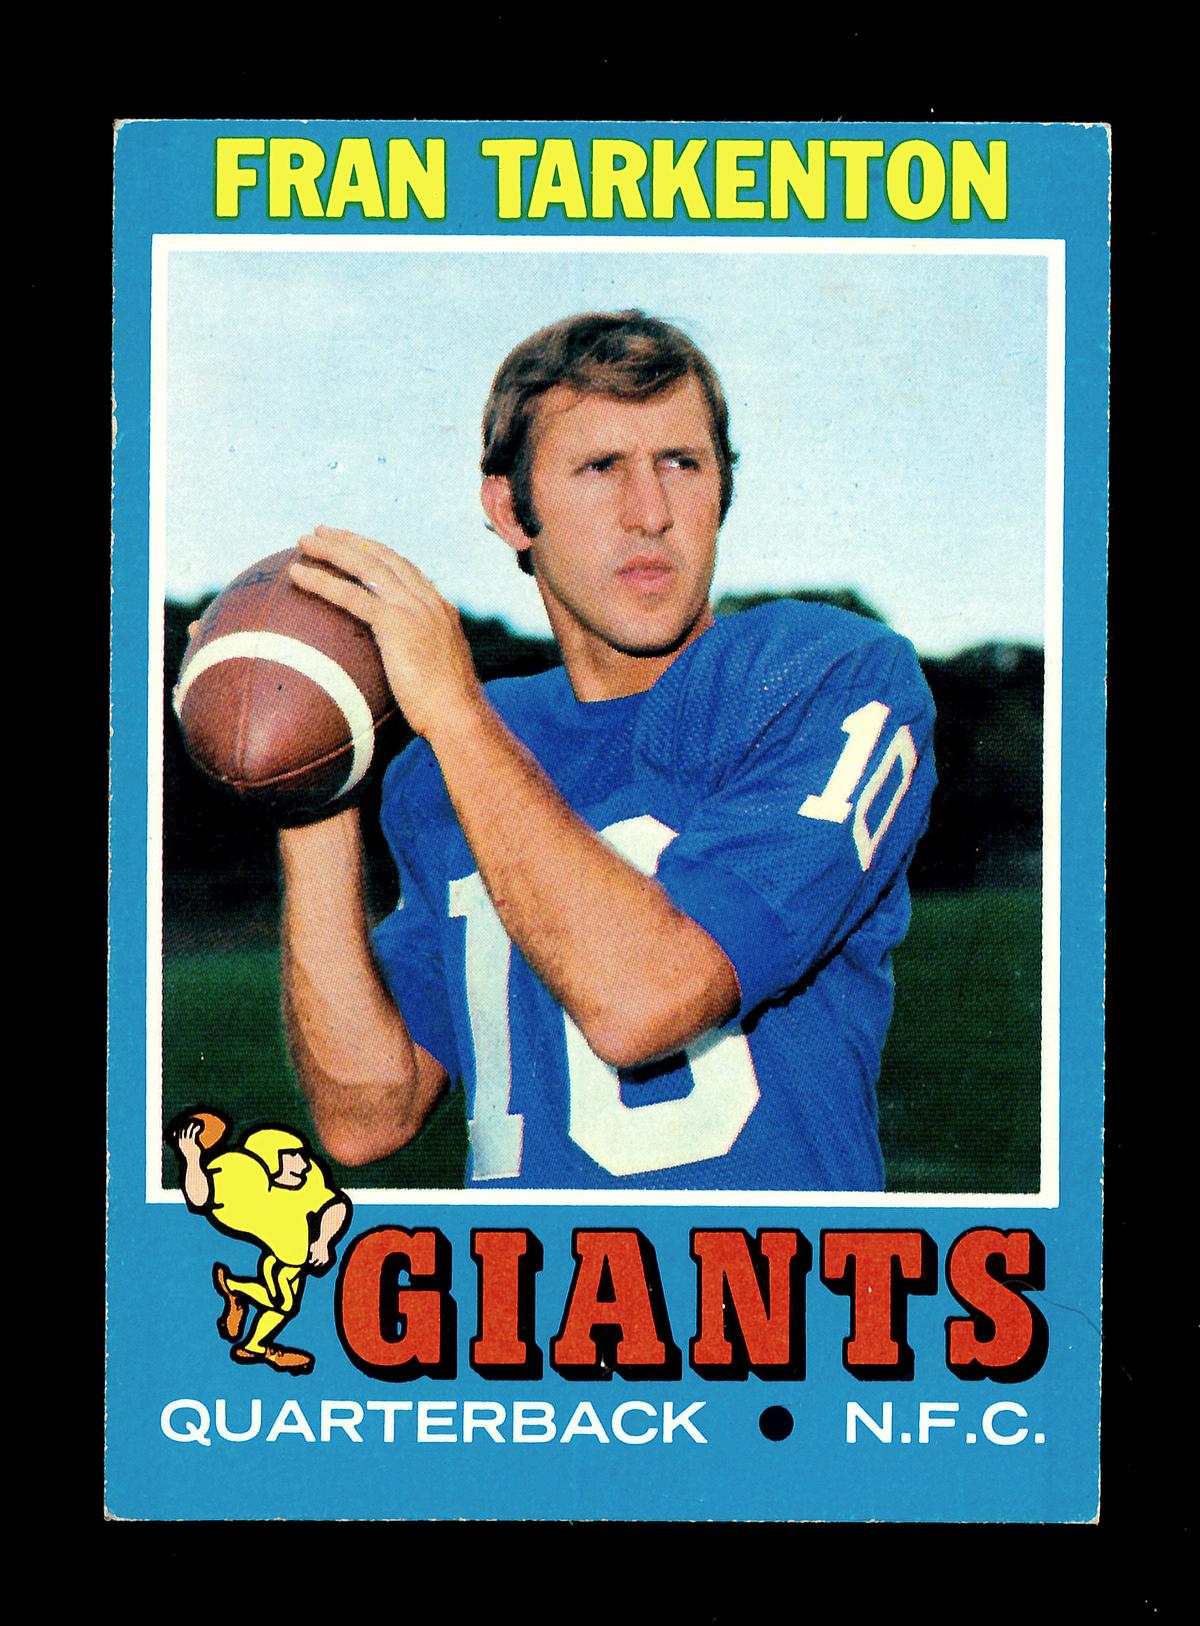 1971 Topps Football Card #120 Hall of Famer Fran Tarkenton New York Giants.